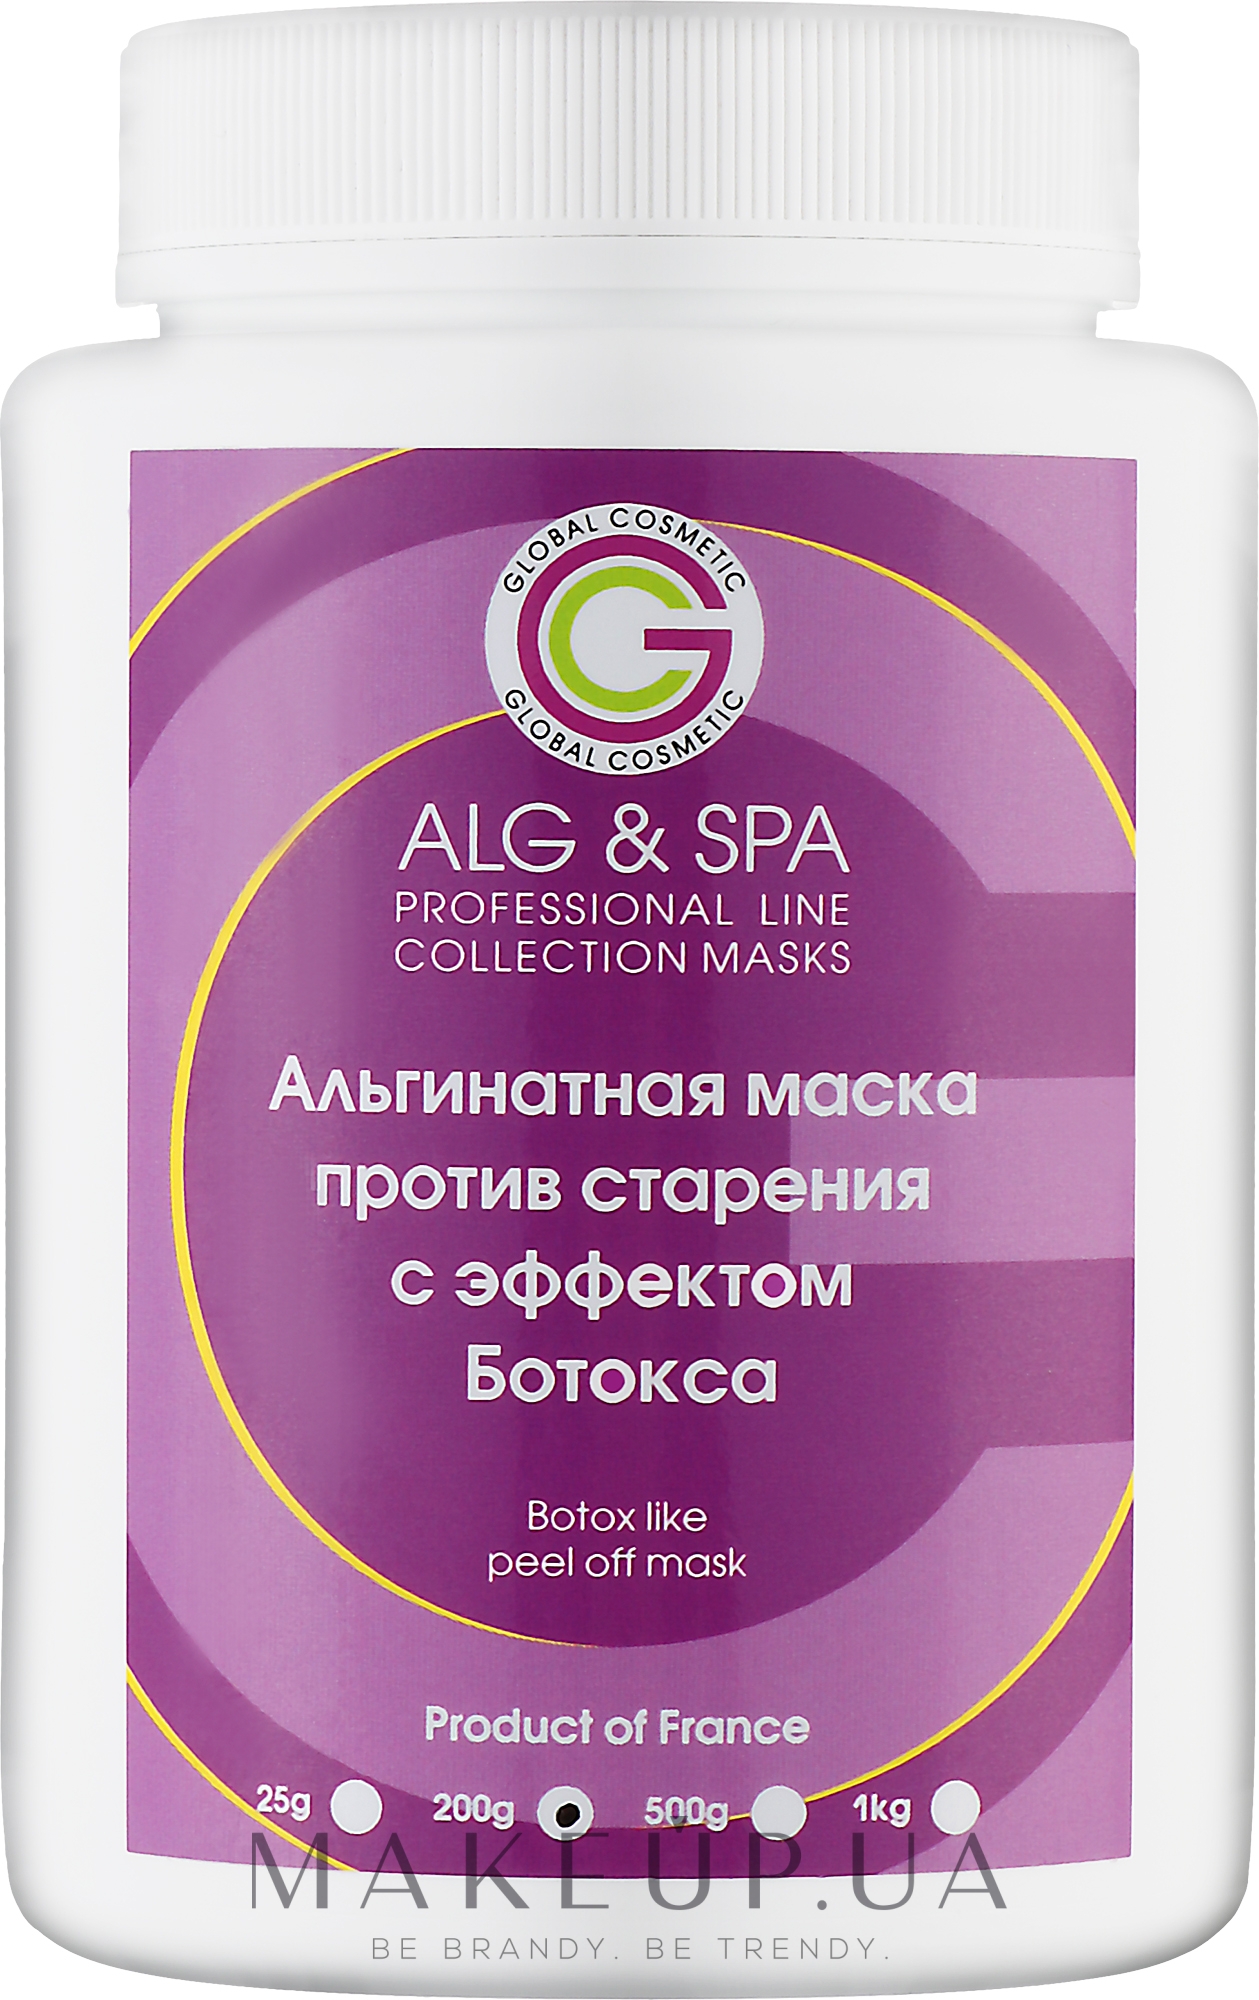 Альгинатная маска против старения кожи лица с эффектом Ботокса - ALG & SPA Professional Line Collection Masks Botox Like Peel Off Mask — фото 200g